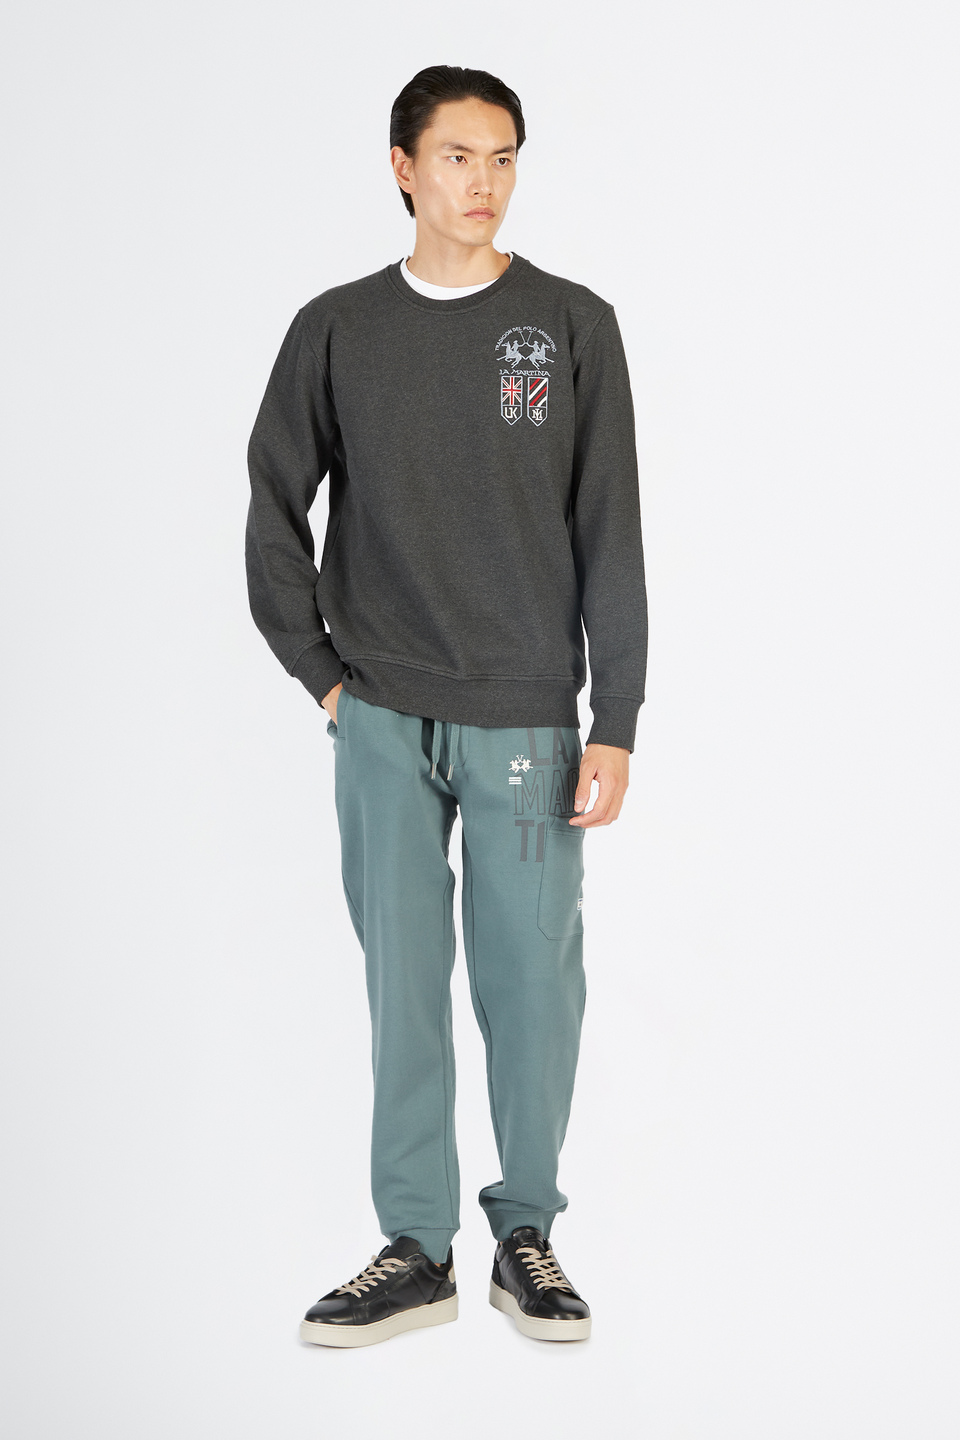 Pantalone da uomo modello jogger in cotone felpato regular fit | La Martina - Official Online Shop